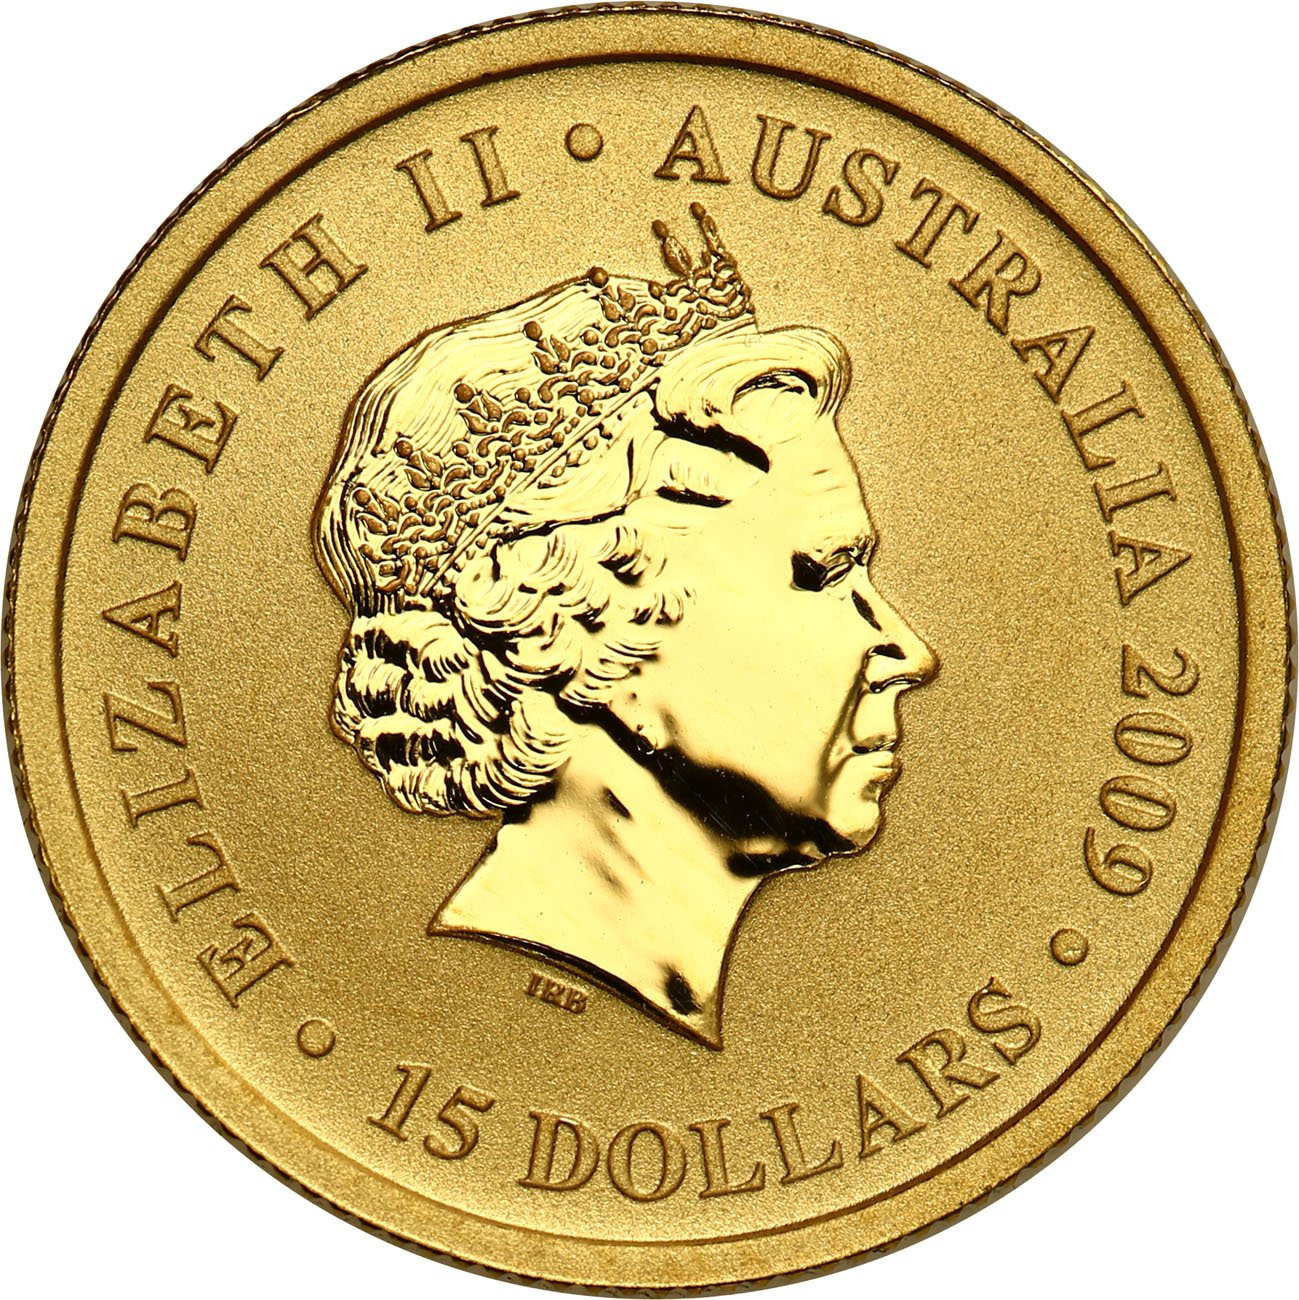 Australia. Złote 15 dolarów Kangur 2009 - 1/10 uncji złota